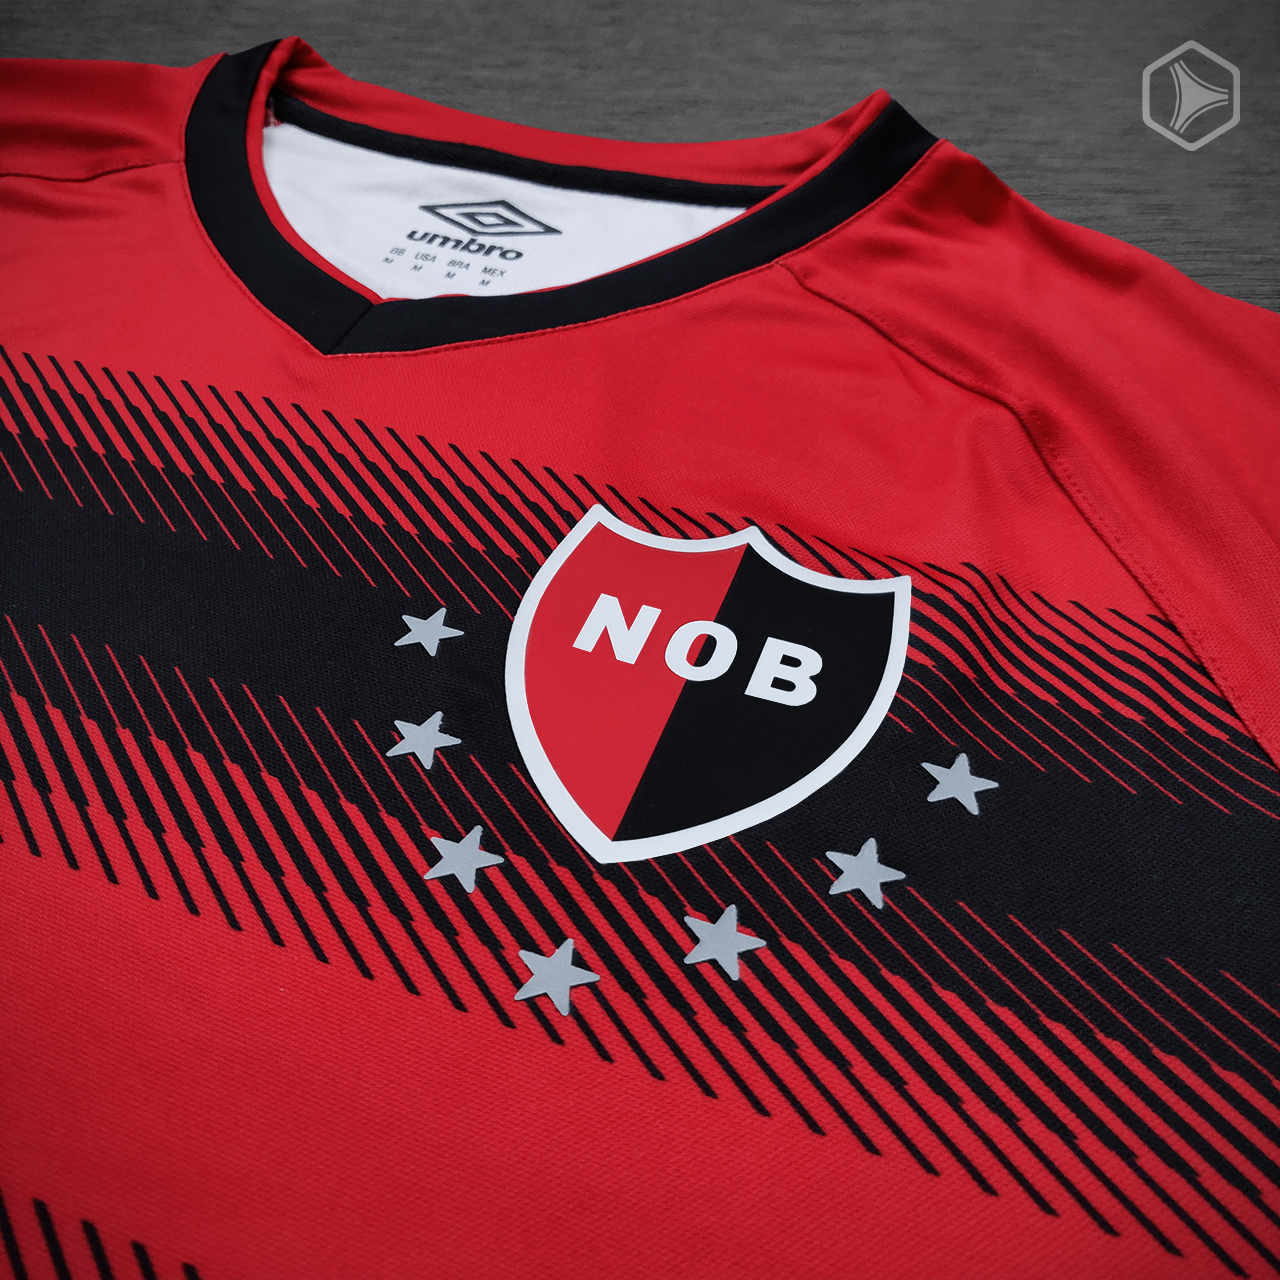 Cuarta camiseta Umbro Newell’s Old Boys 2020 2021